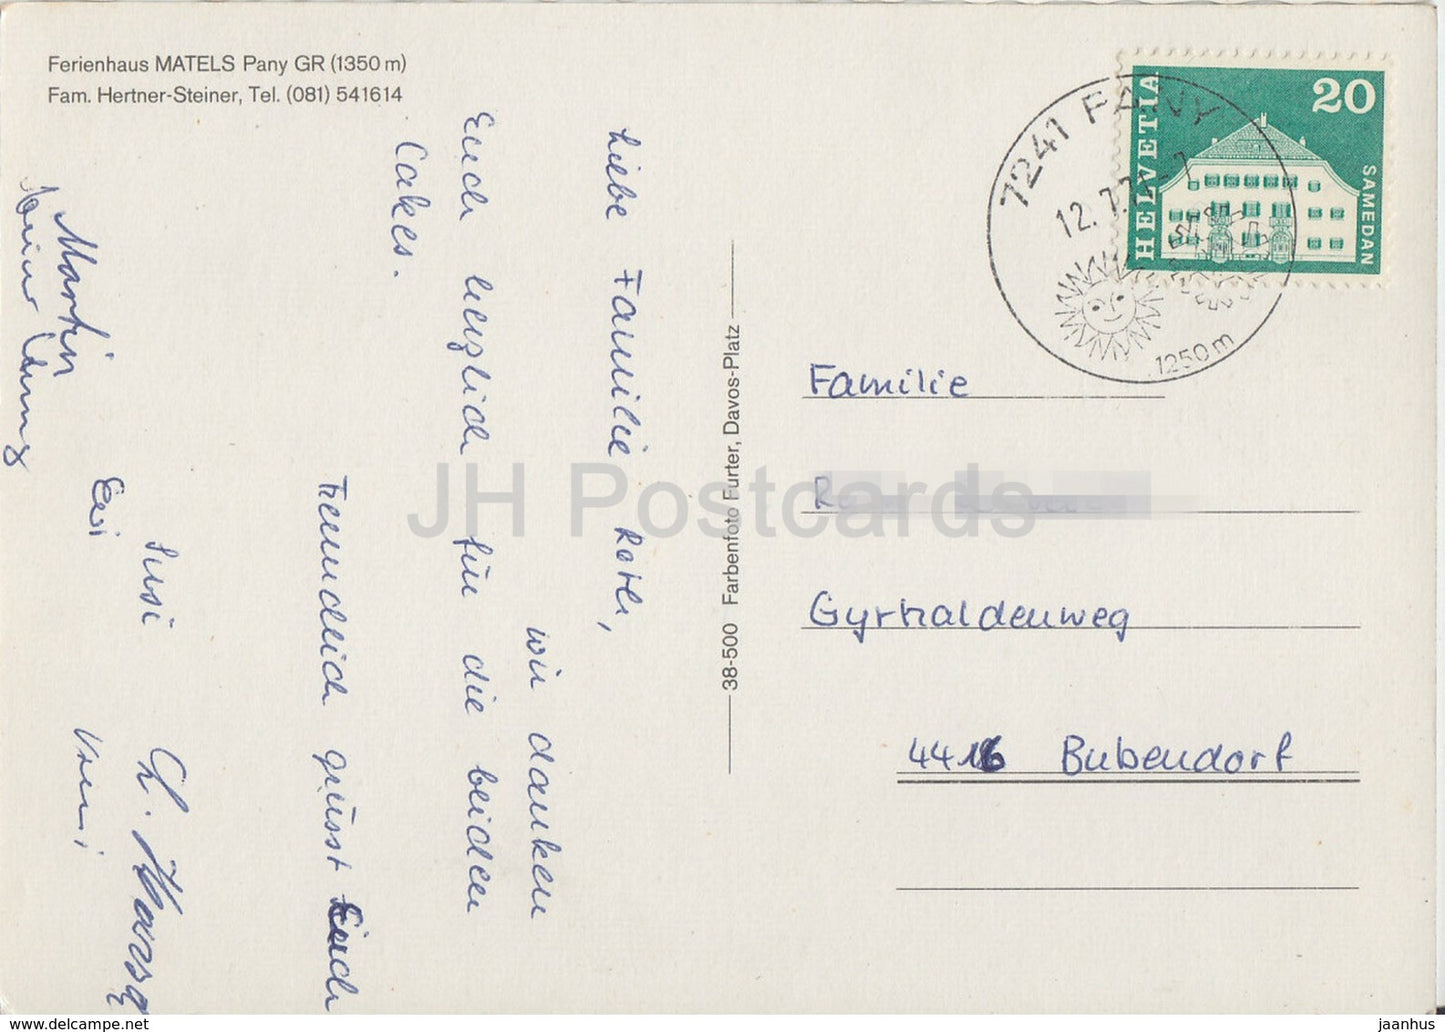 Ferienhaus Matels Pany - 1971 - Switzerland - used